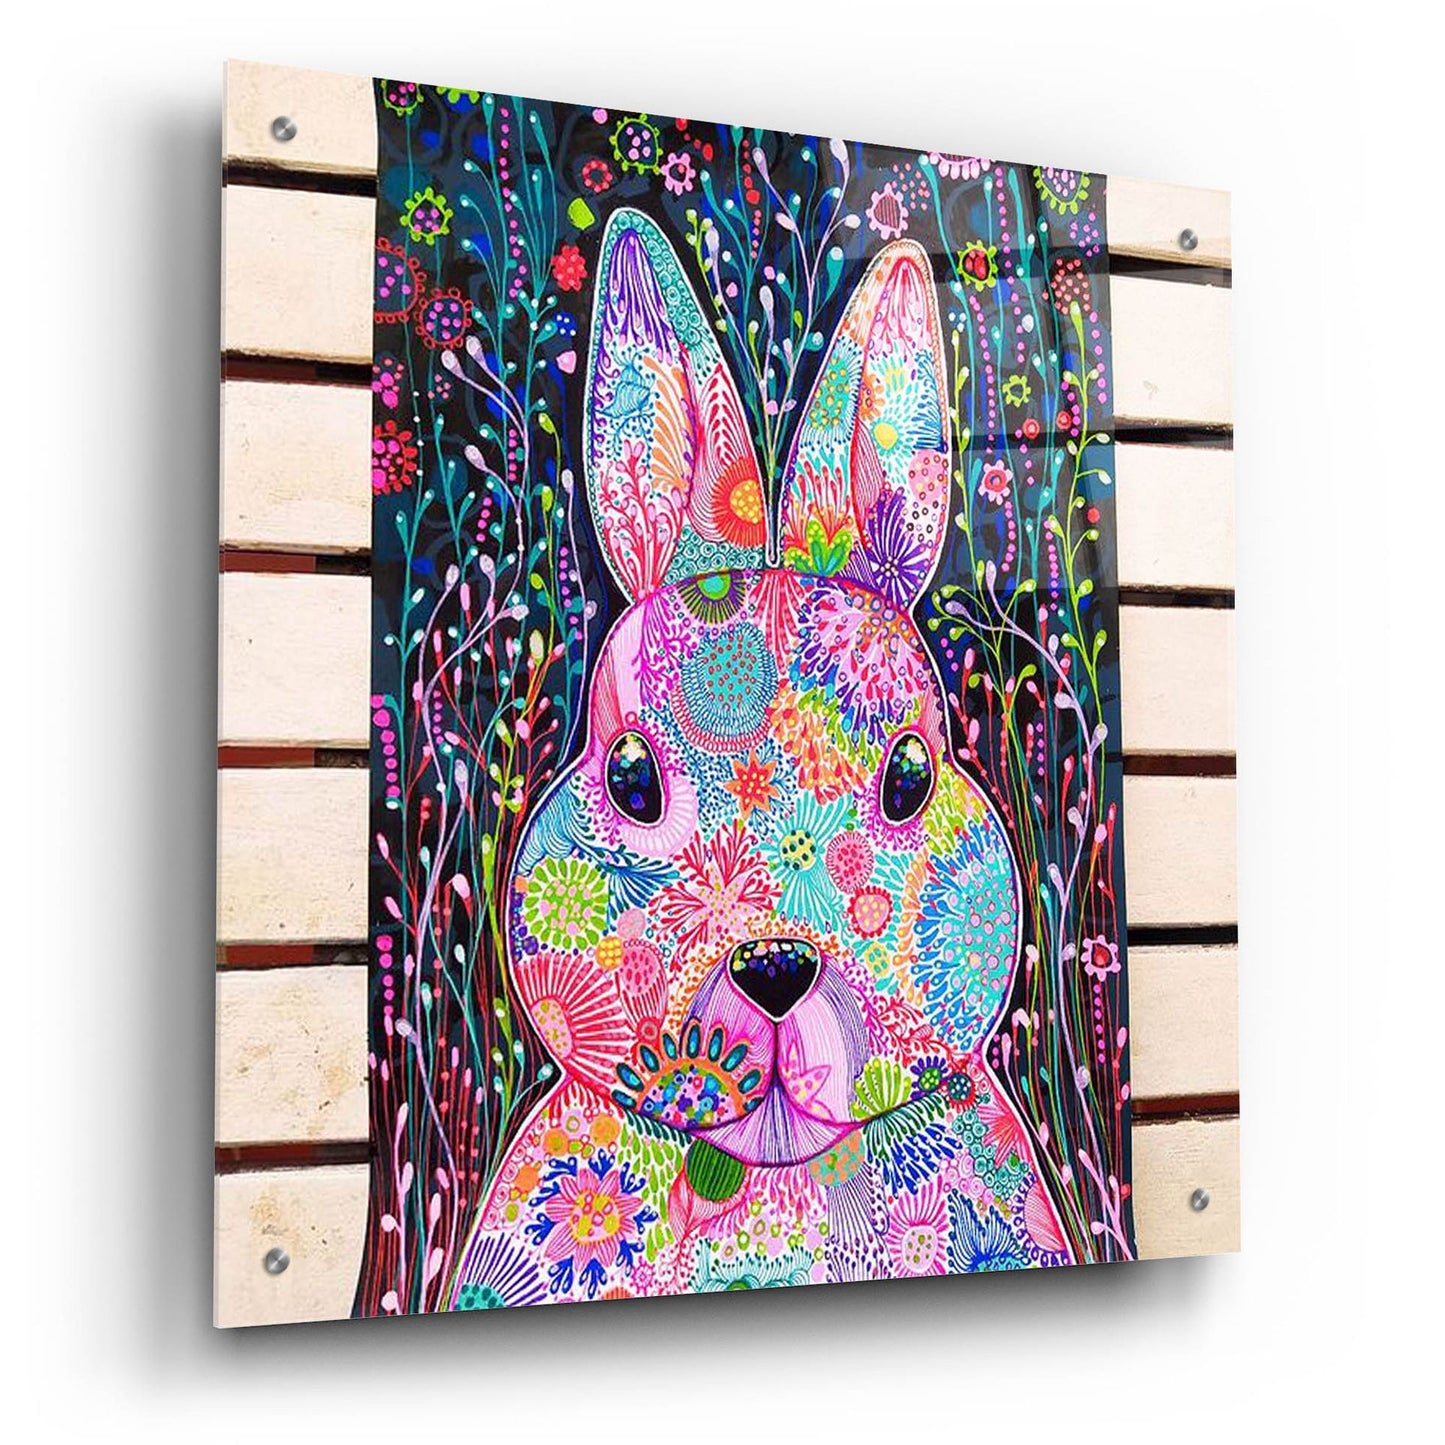 Epic Art 'Bunny2 by Noemi Ibarz, Acrylic Glass Wall Art,24x24